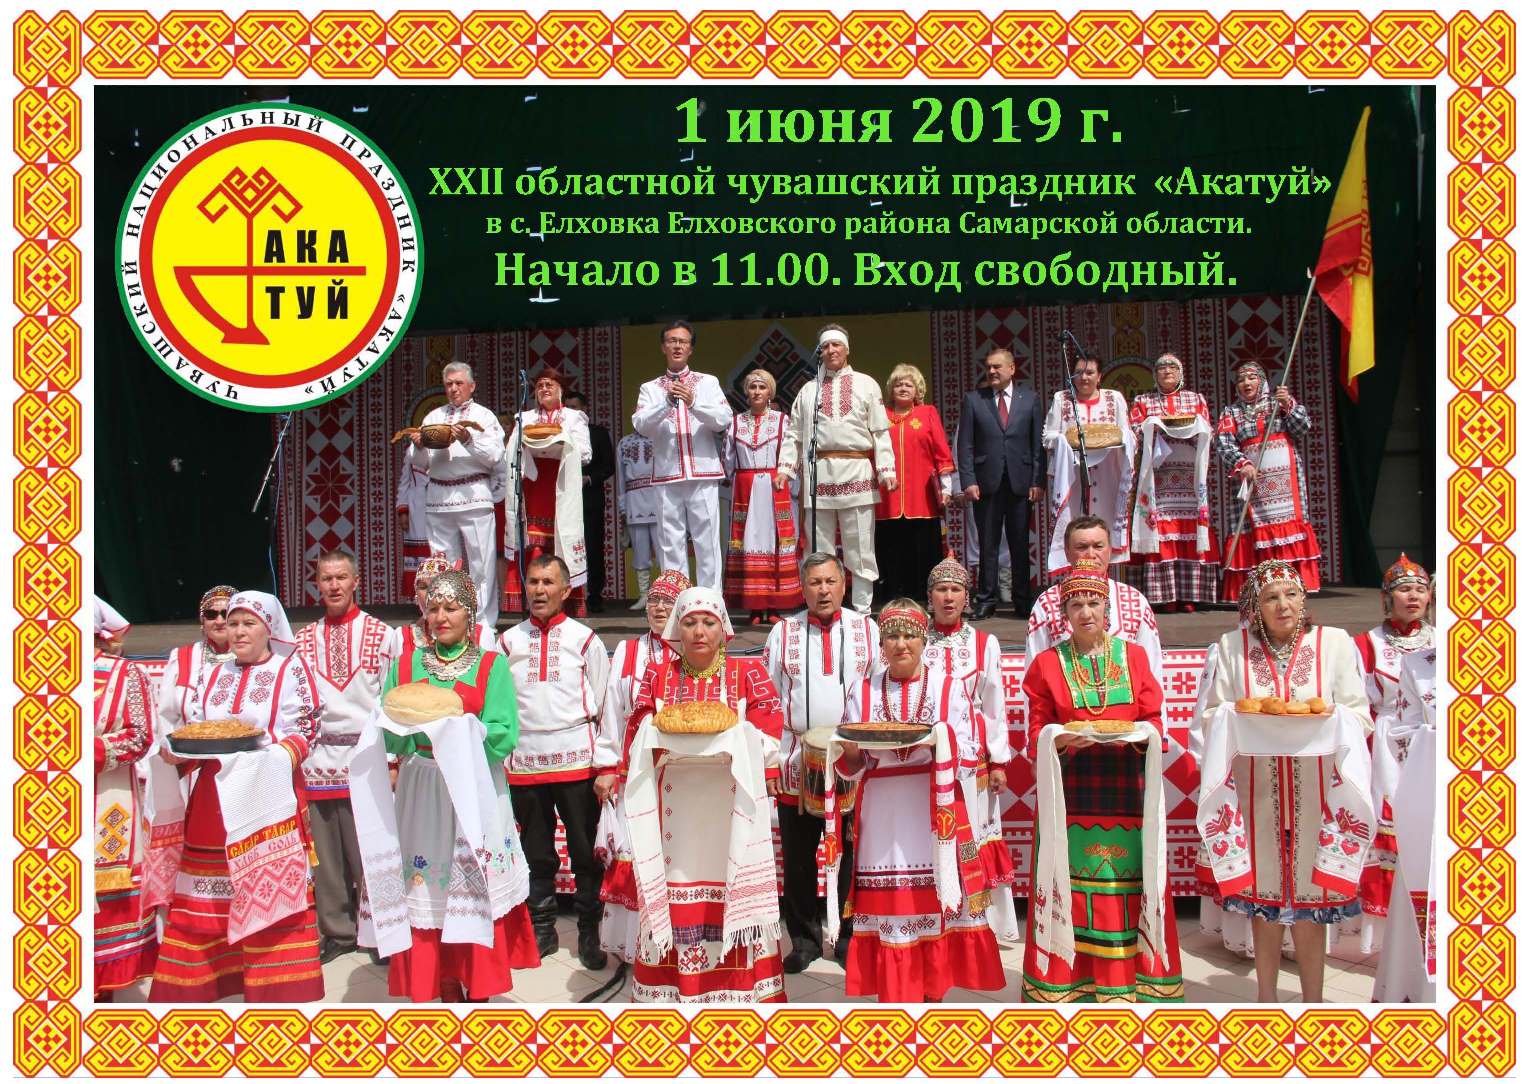 В Елховке пройдет XXII областной чувашский национальный праздник «Акатуй»